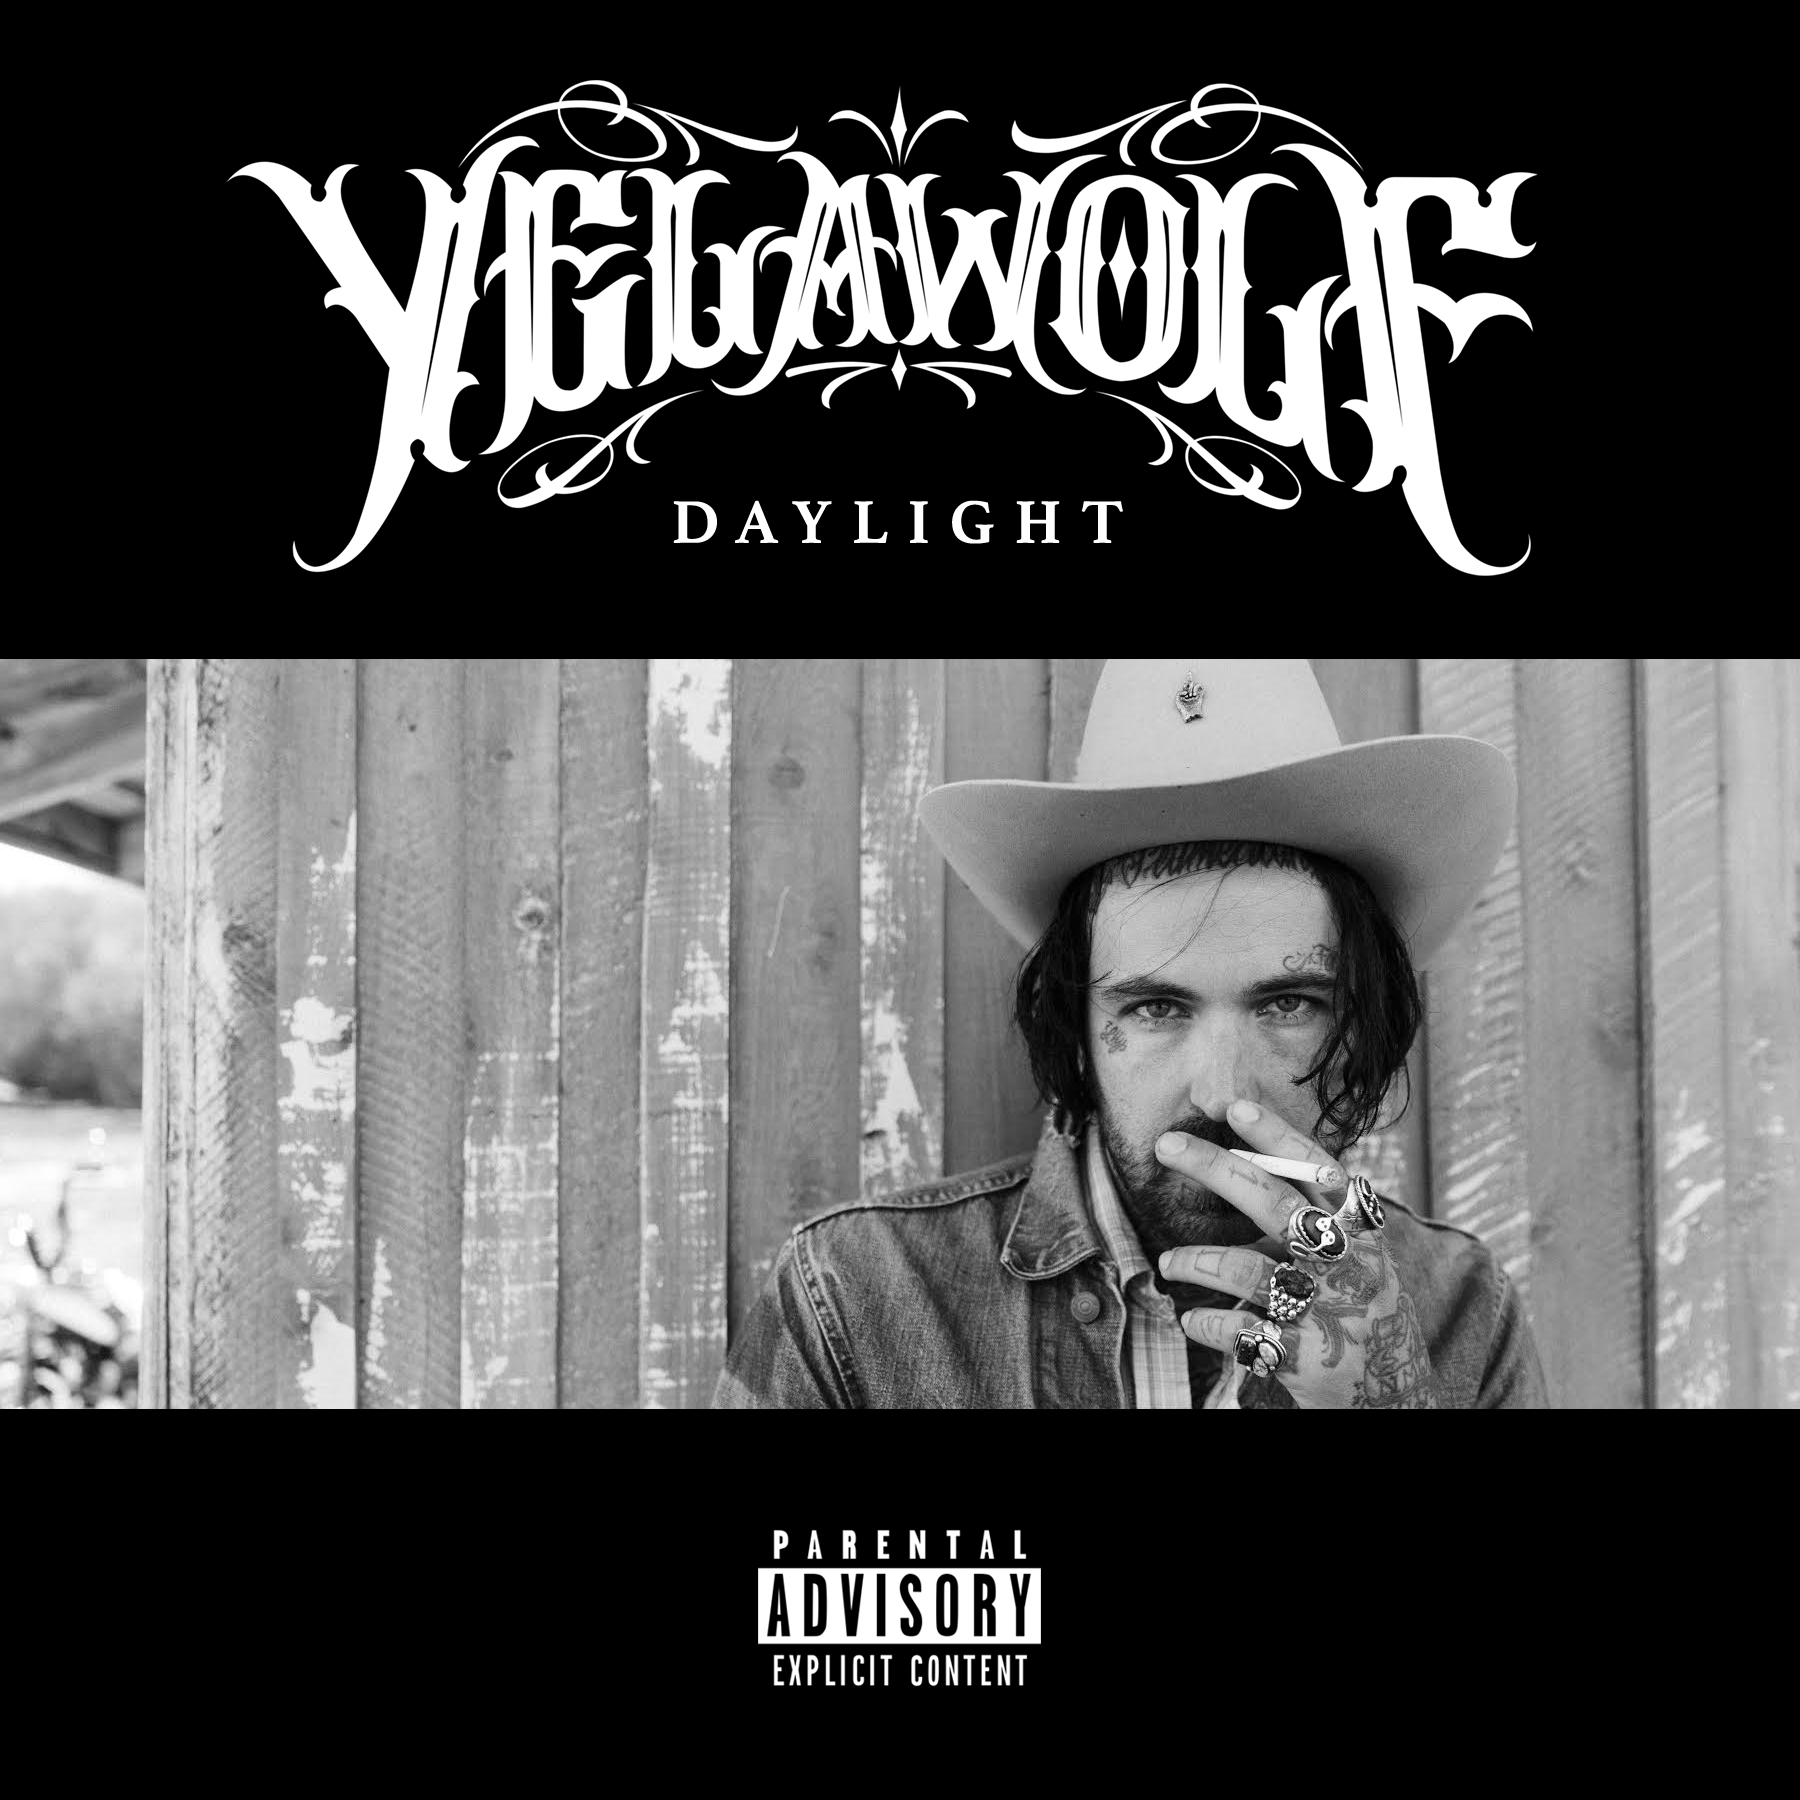 Daylight yelawolf lyrics